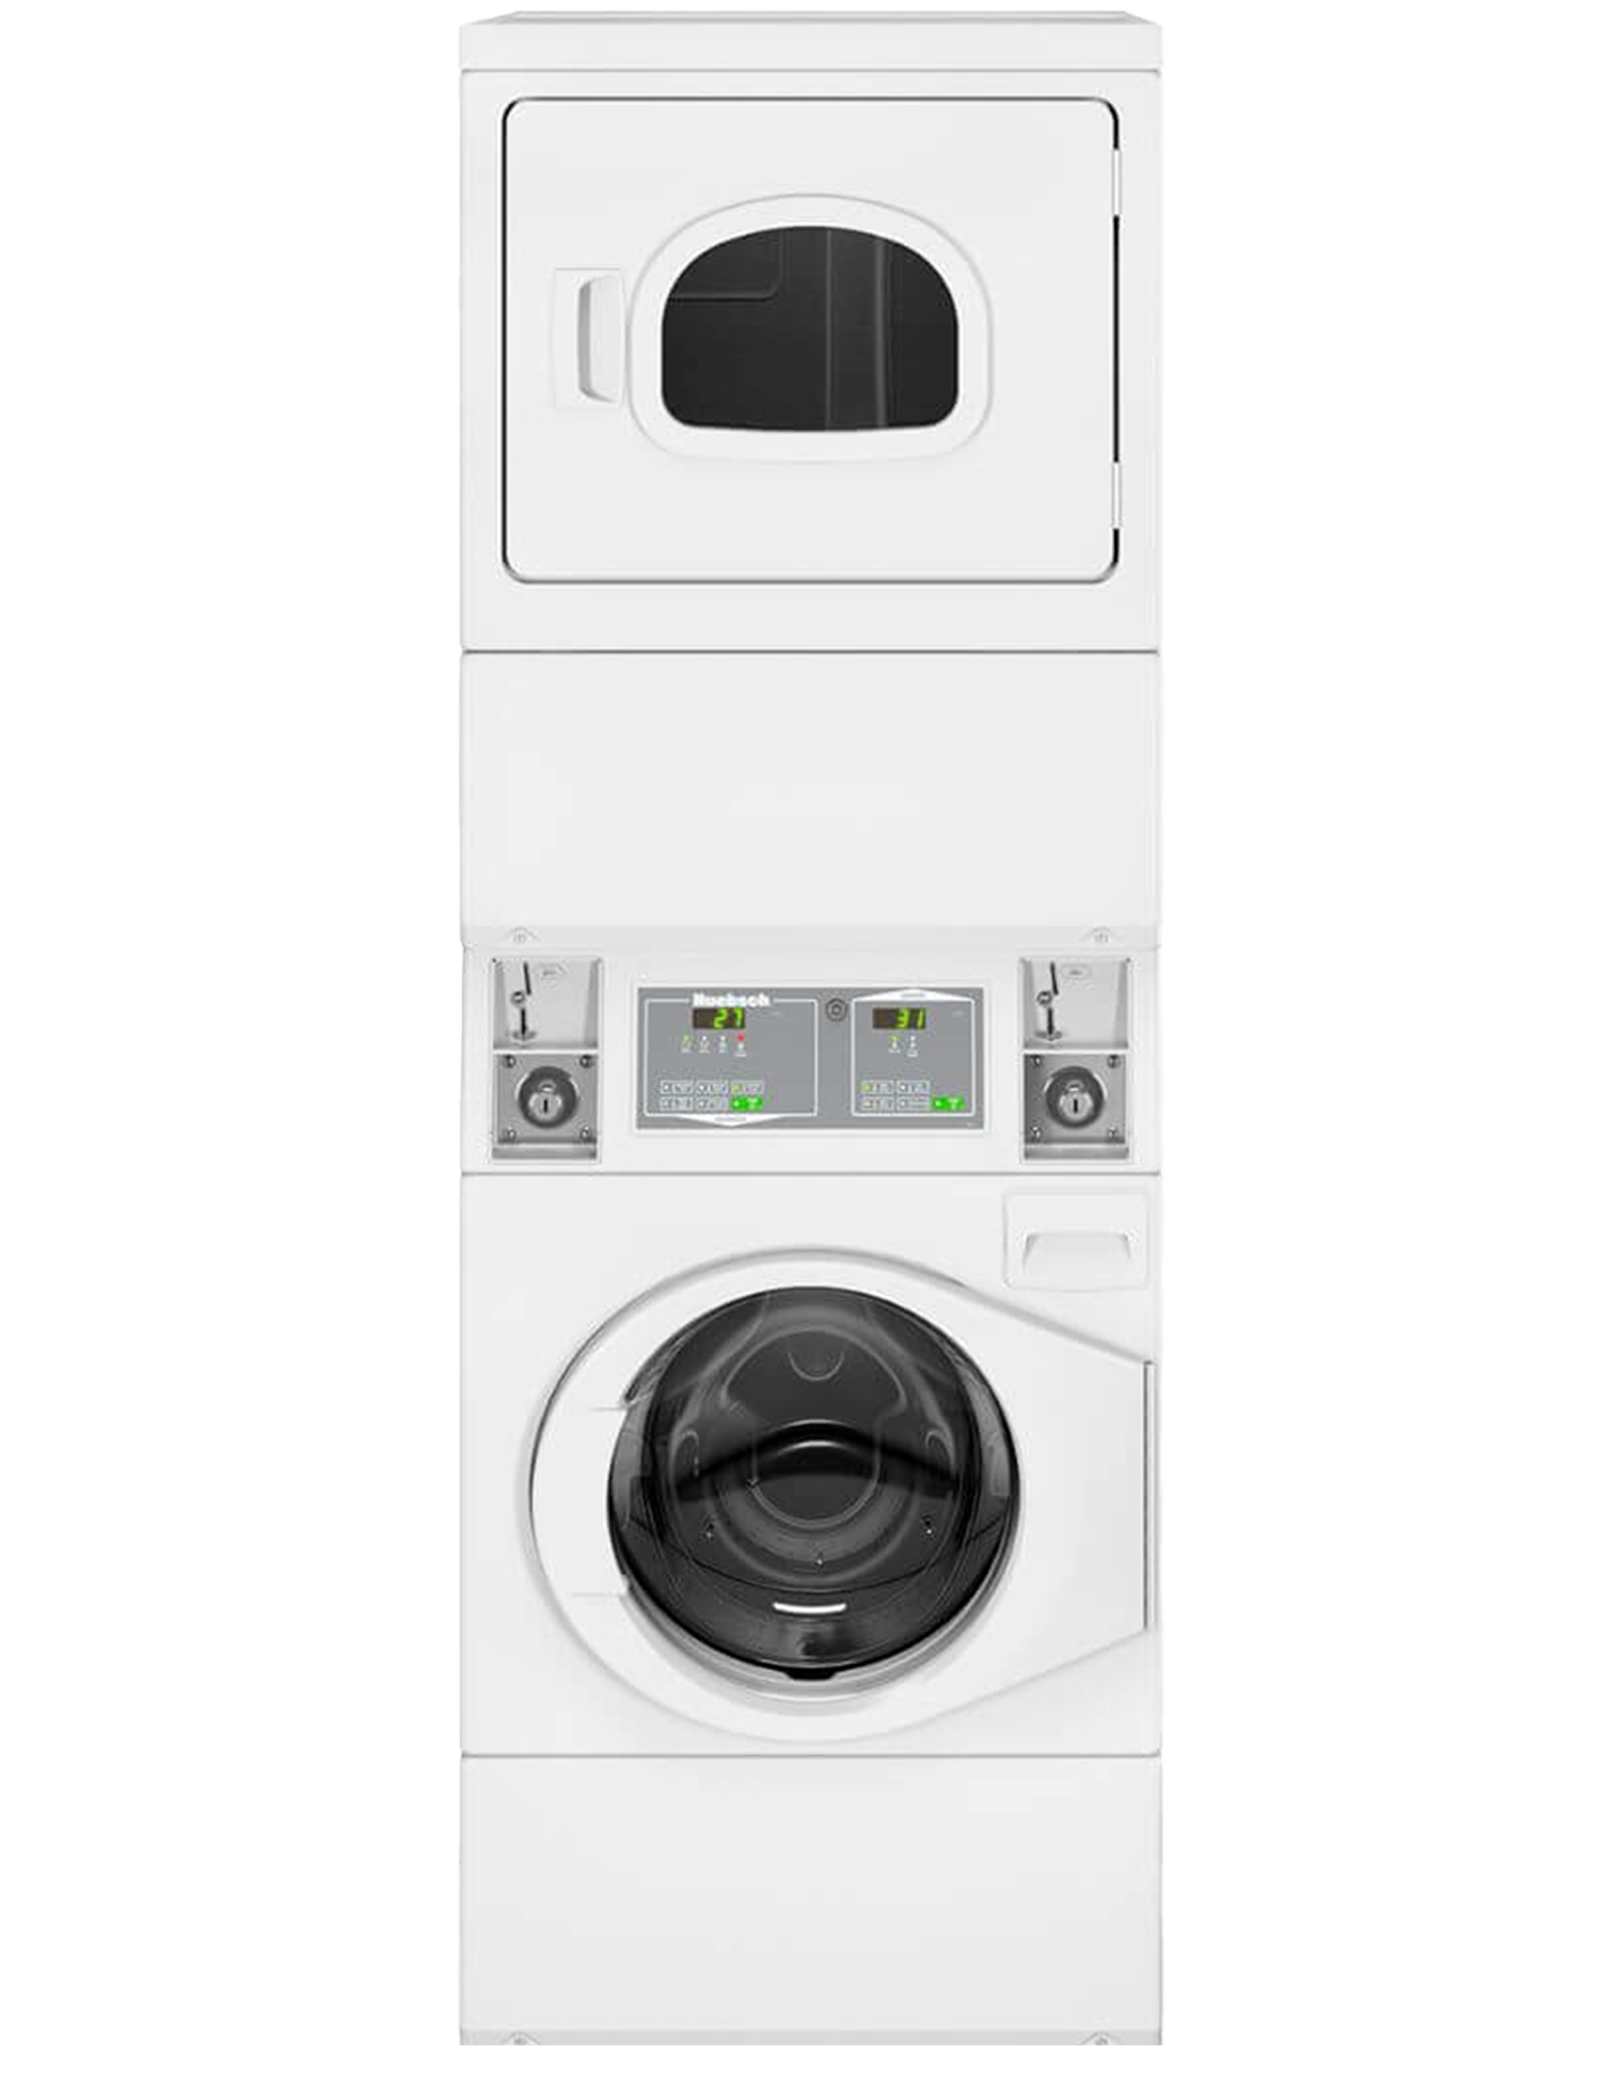 【豪華型】下洗上烘衣機 HTGBCASP115TW01